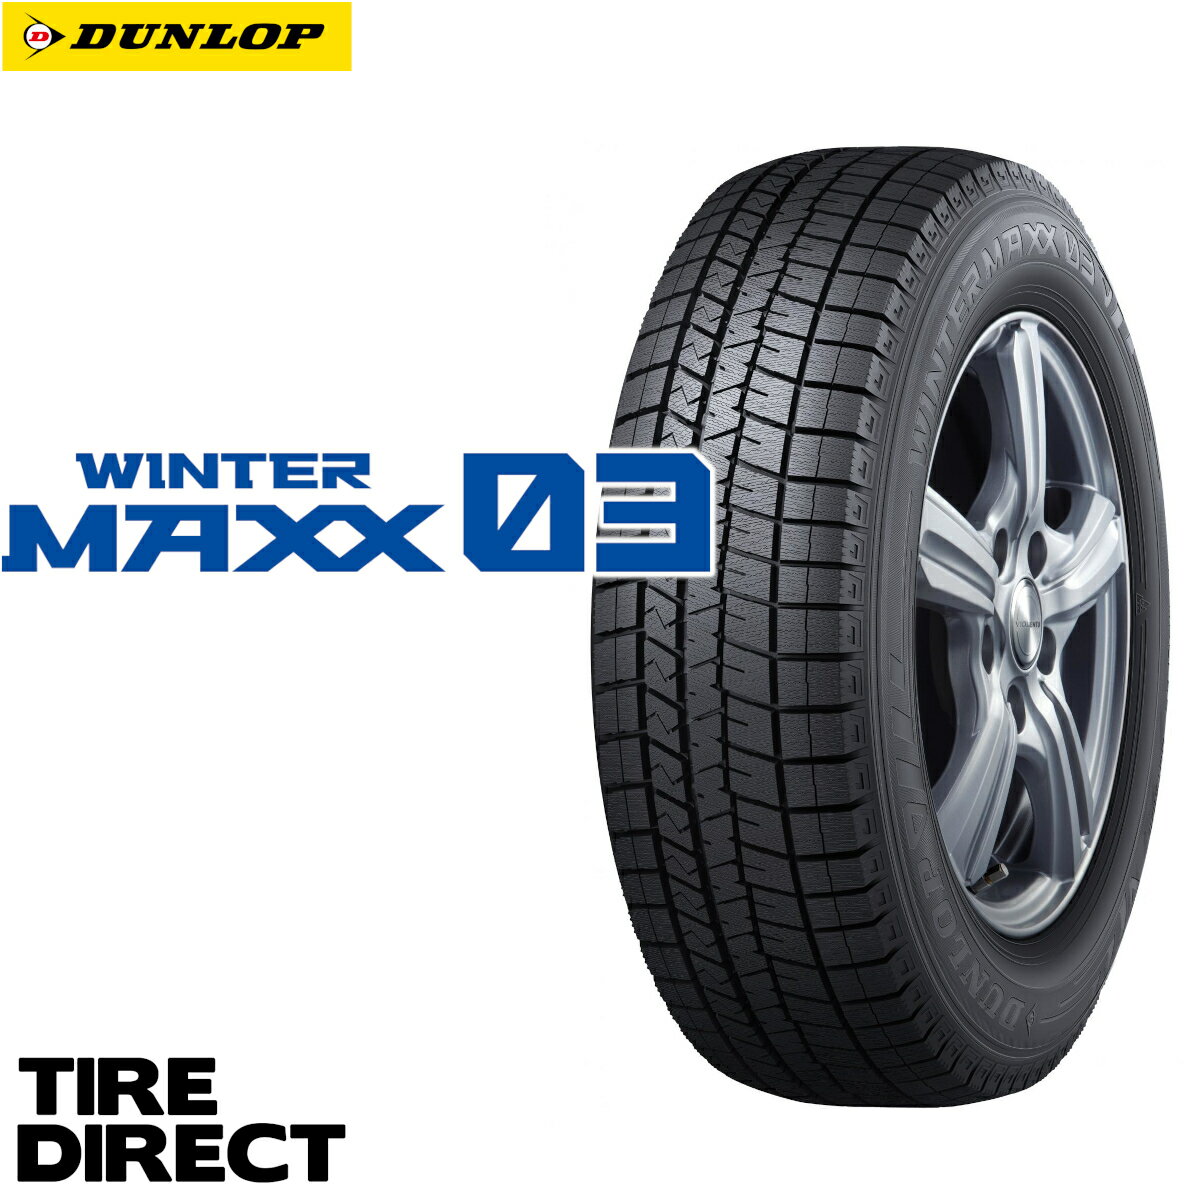 新品 ダンロップ ウインターマックス WM03 195/65R16 92Q DUNLOP WINTER MAXX ウィンターマックス 195/65-16 冬タイヤ スタッドレスタイヤ